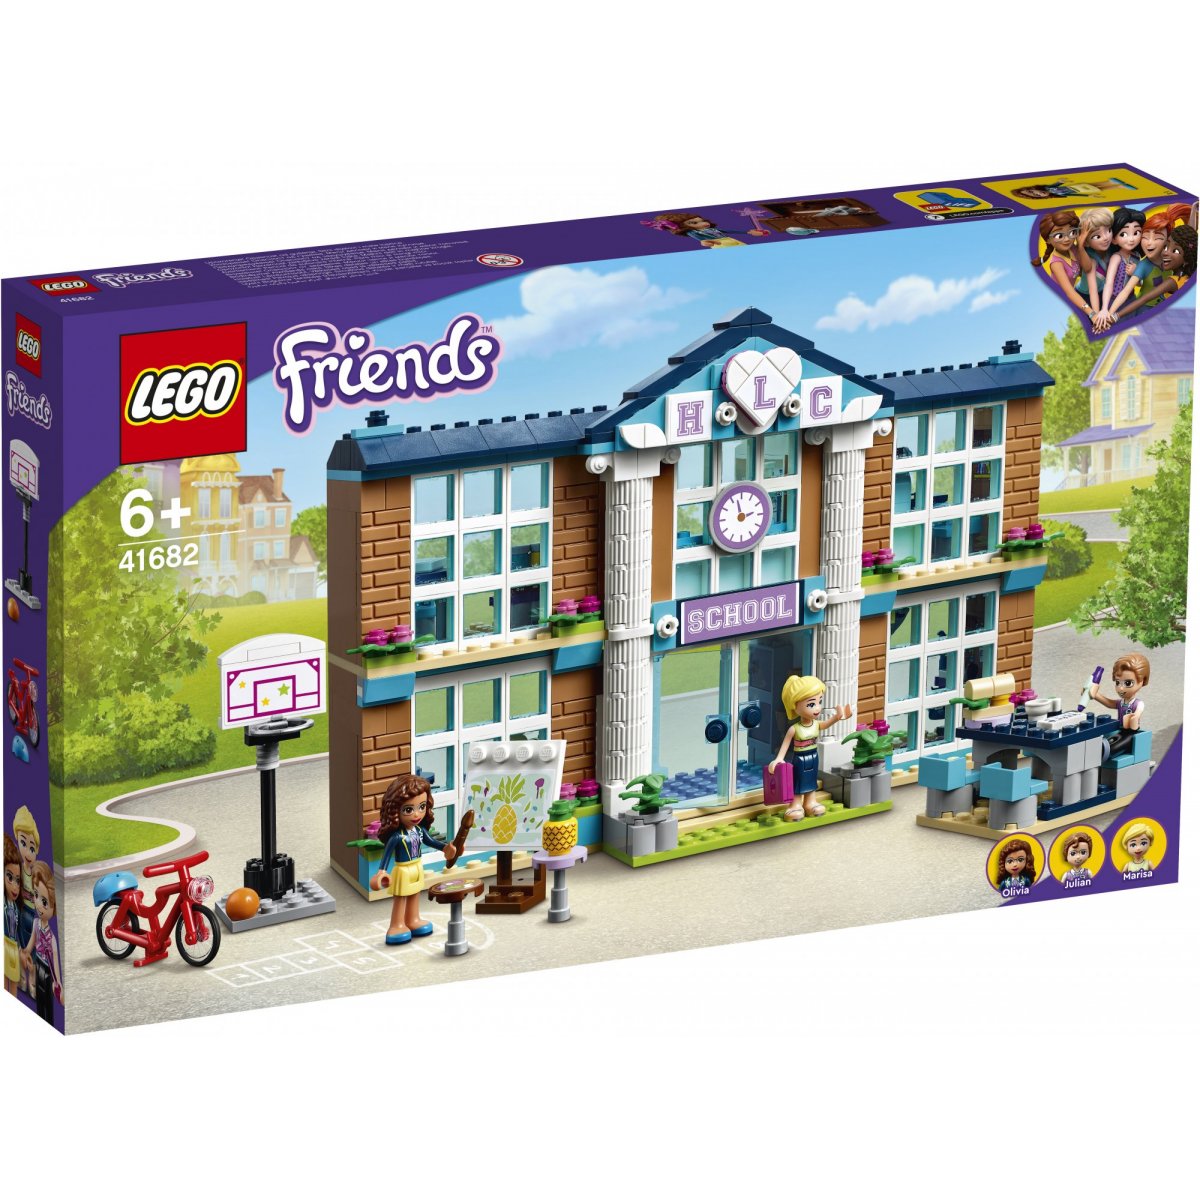 LEGO Friends Heartlake Skole - Multi Sender til kl. 20.00 |